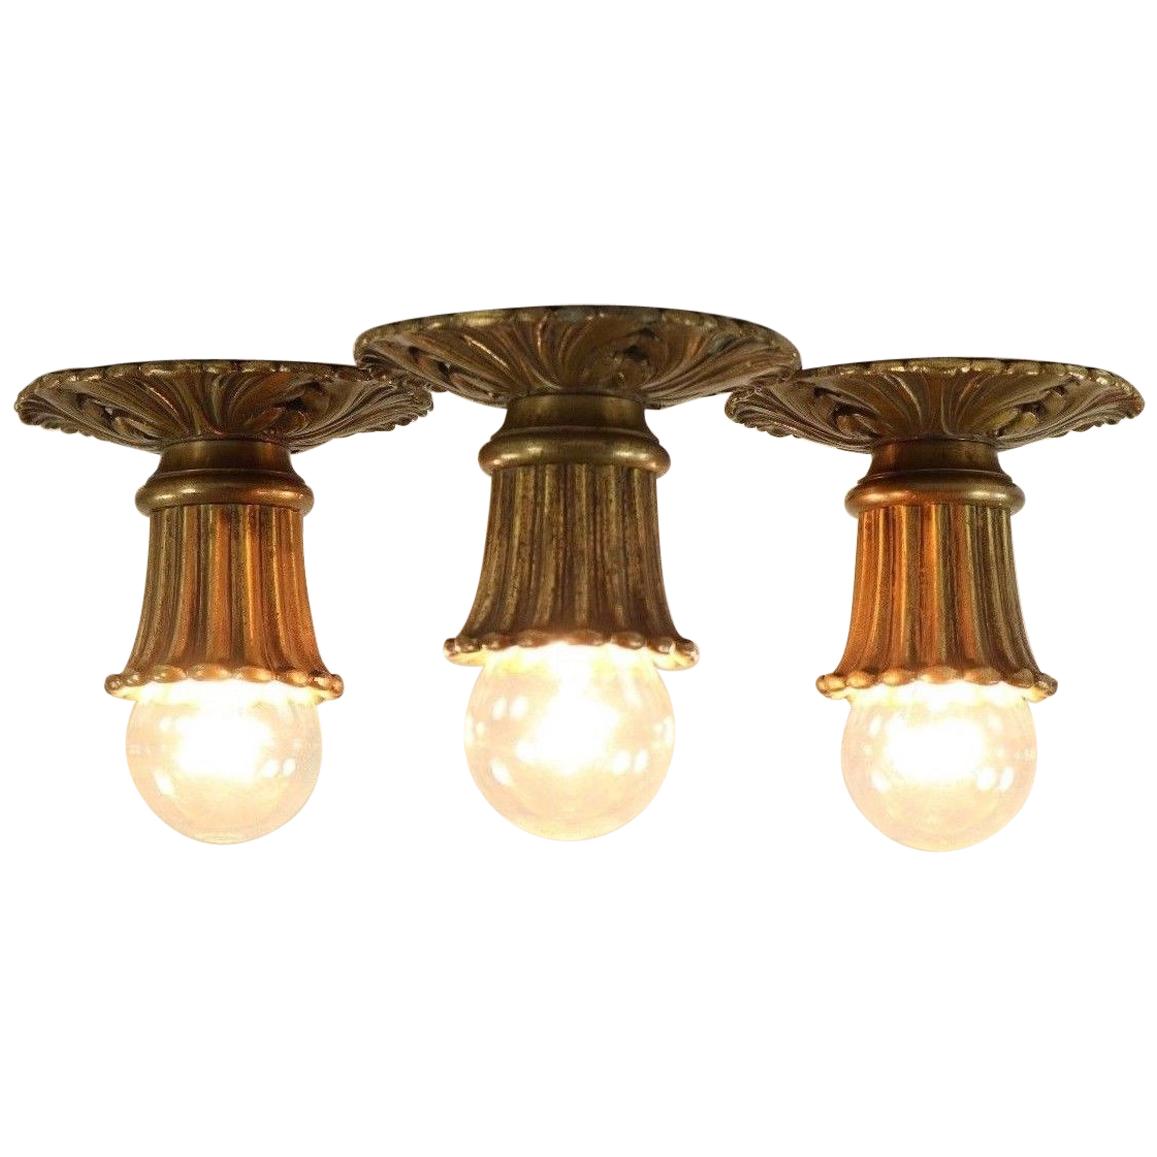 Set of 3 Art Nouveau Brass Ceiling Lamps Flush Mount Lights, France, 1910s-1920s